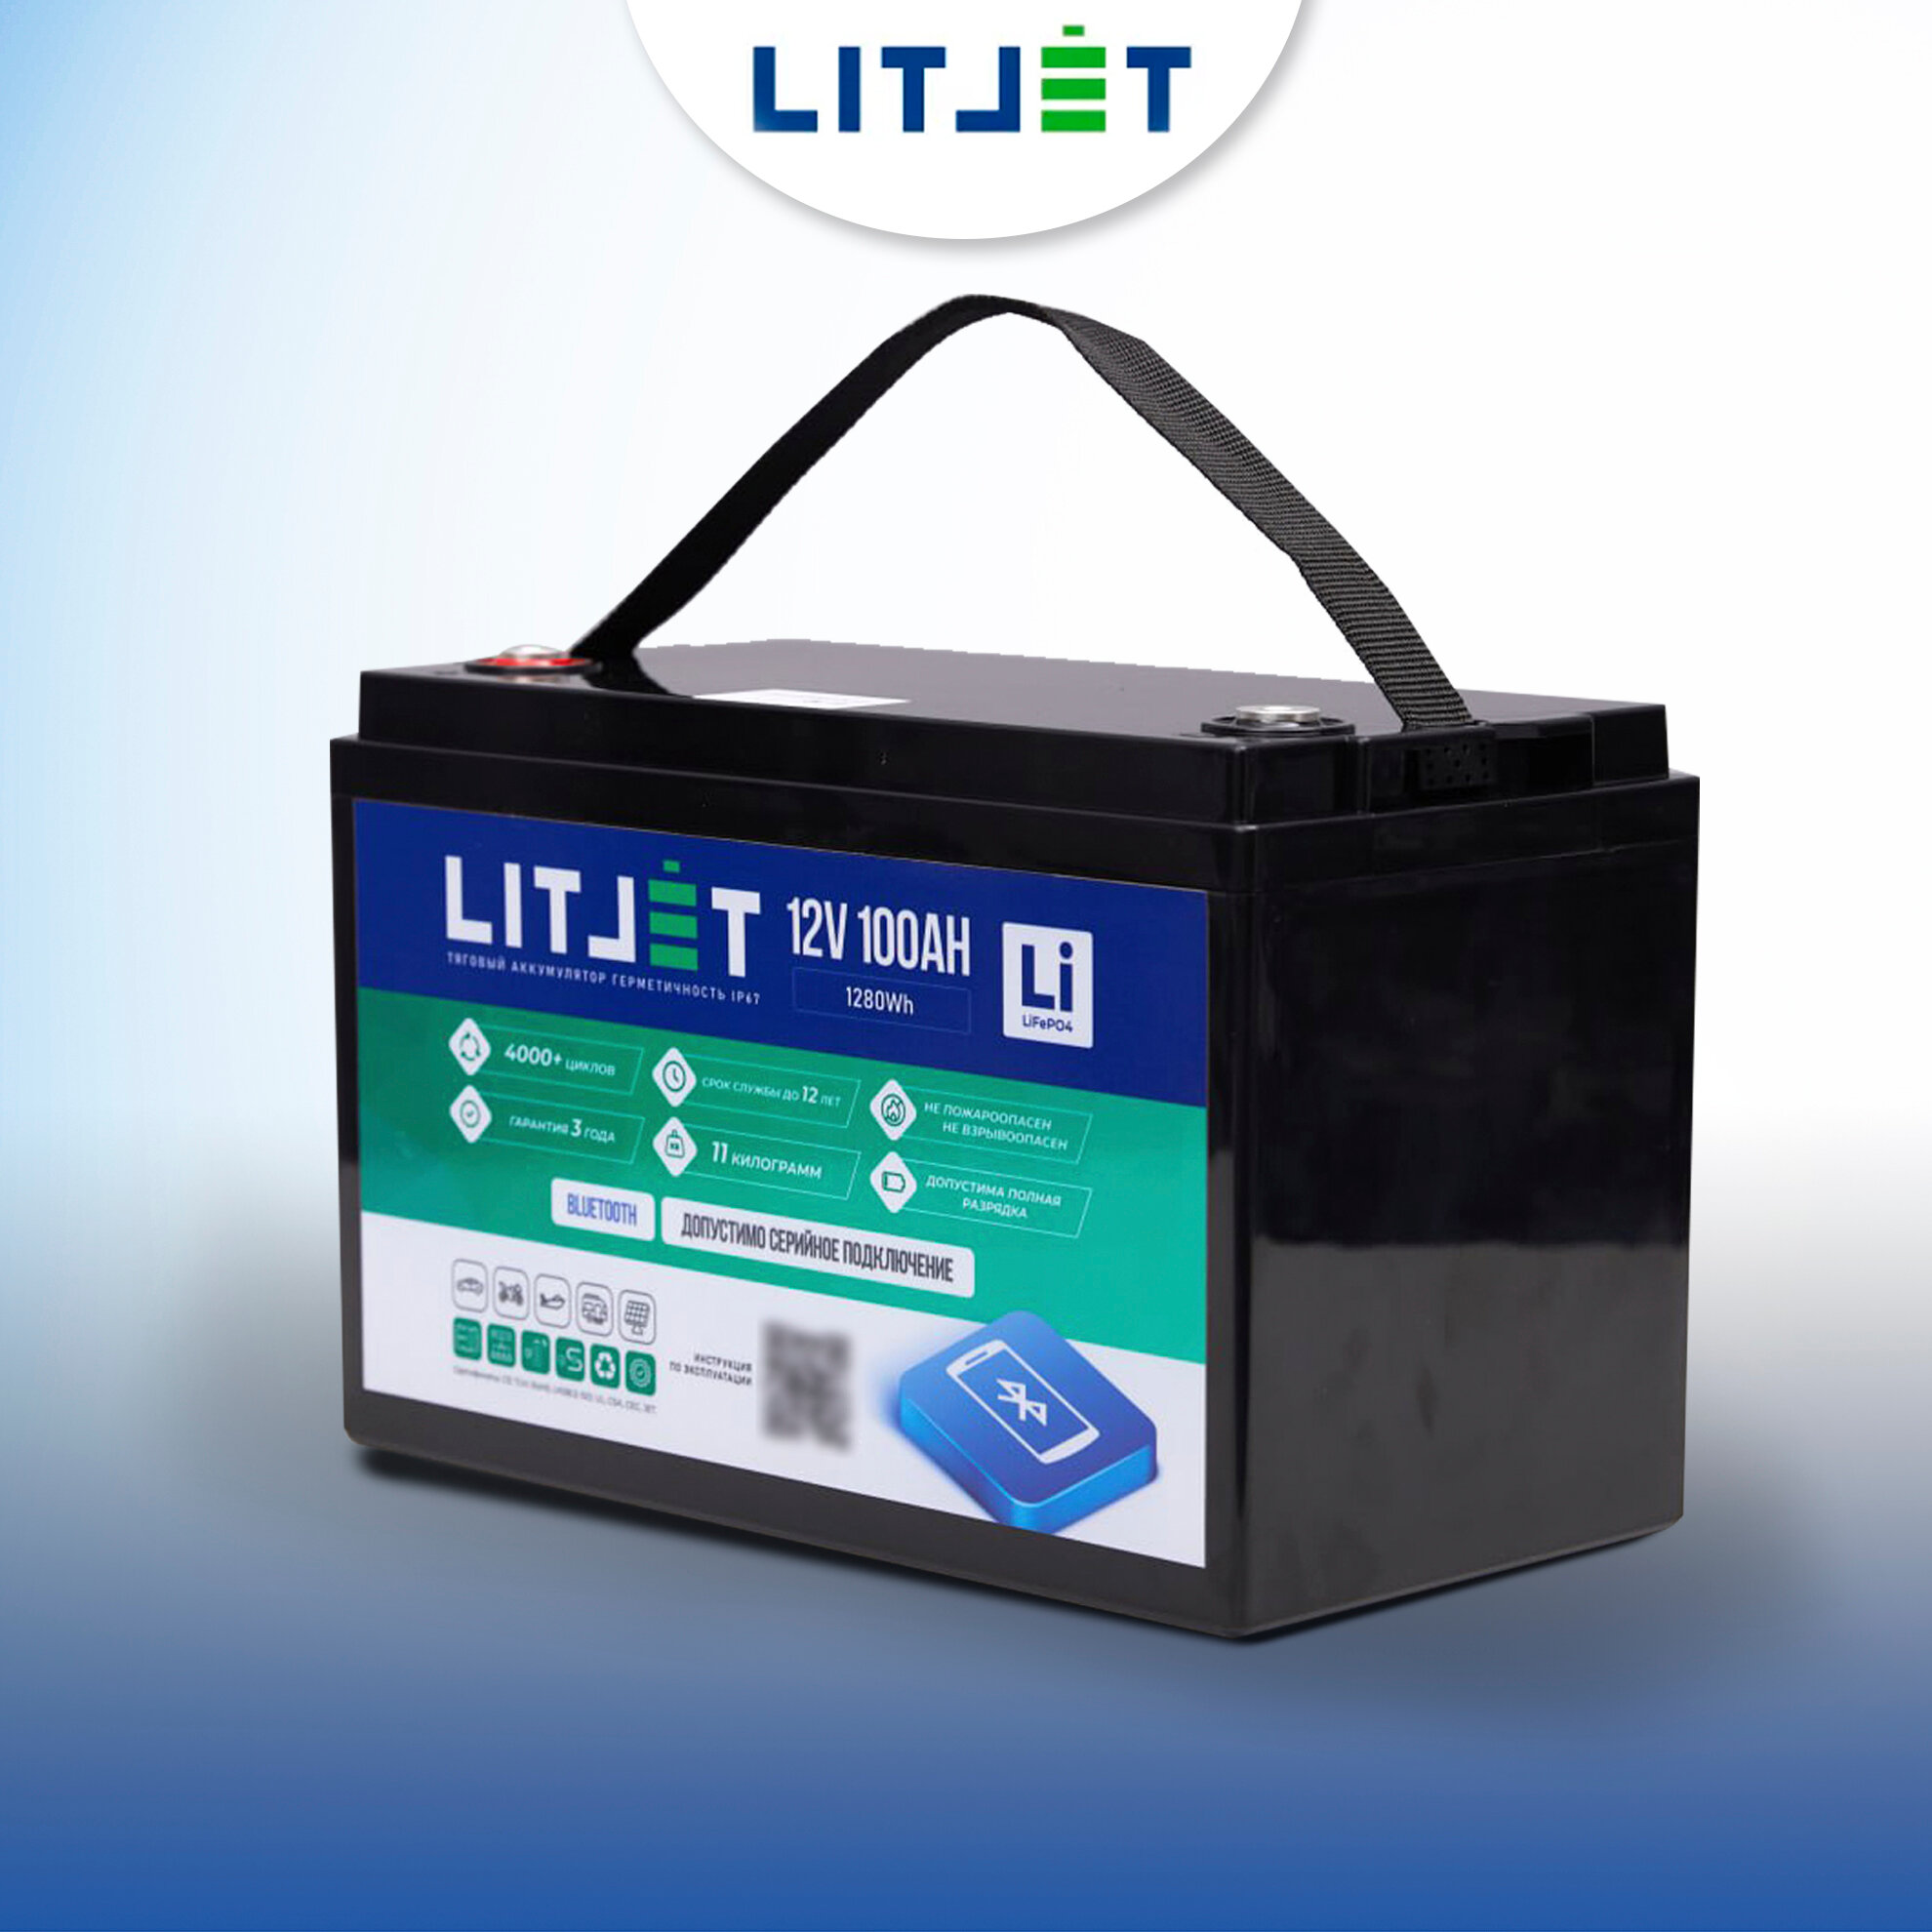 Тяговый аккумулятор LiFePO4 LITJET 12V 100Ah с Bluetooth для ИБП солнечных электростанций лодочных моторов автодомов/прицепов